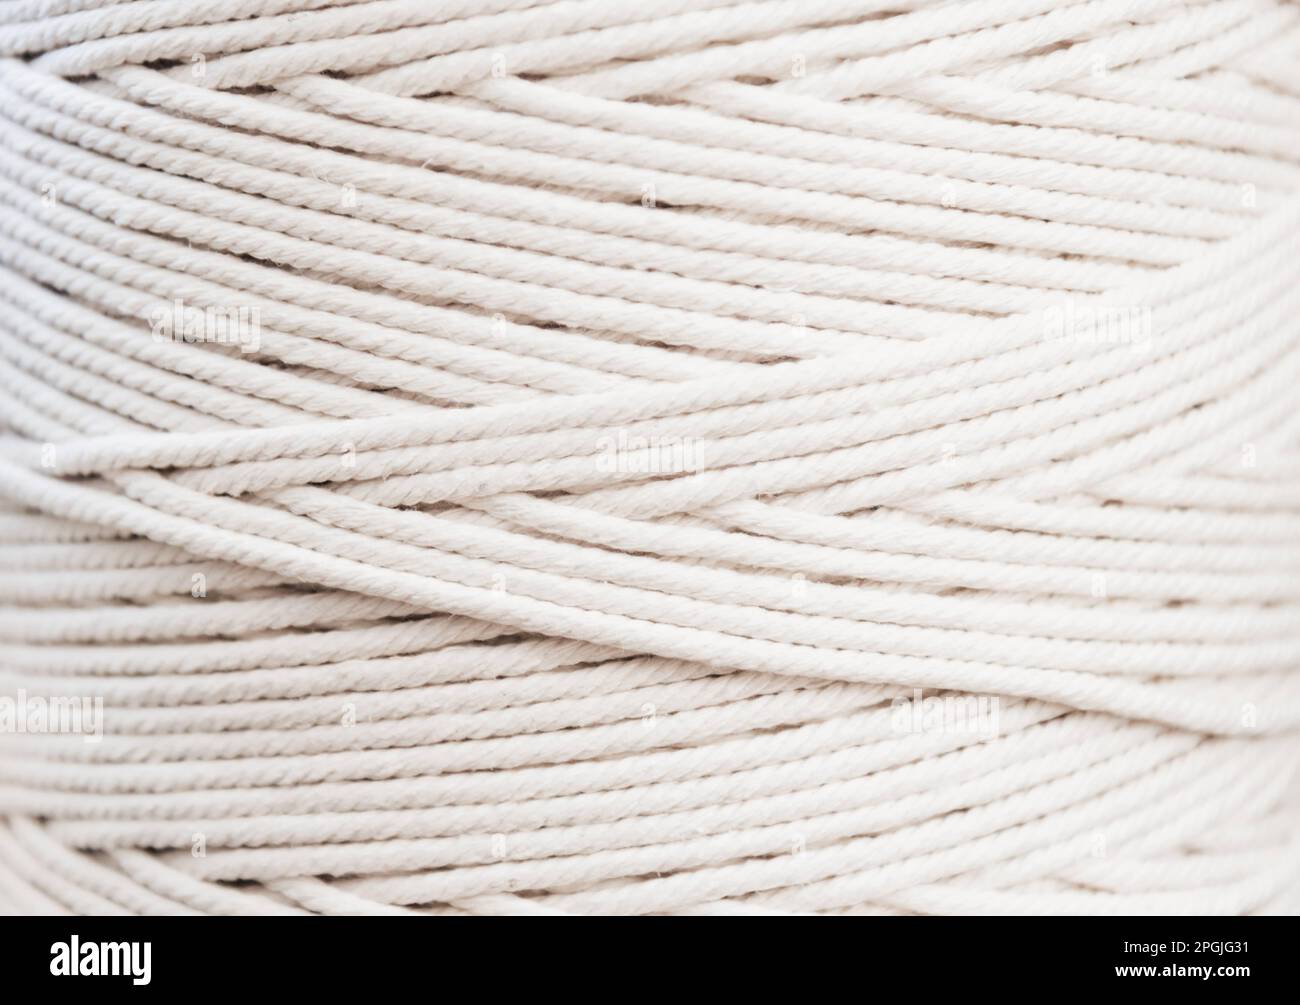 Un gros plan d'une corde blanche sur fond blanc, parfait pour une utilisation en textile et en tissu Banque D'Images